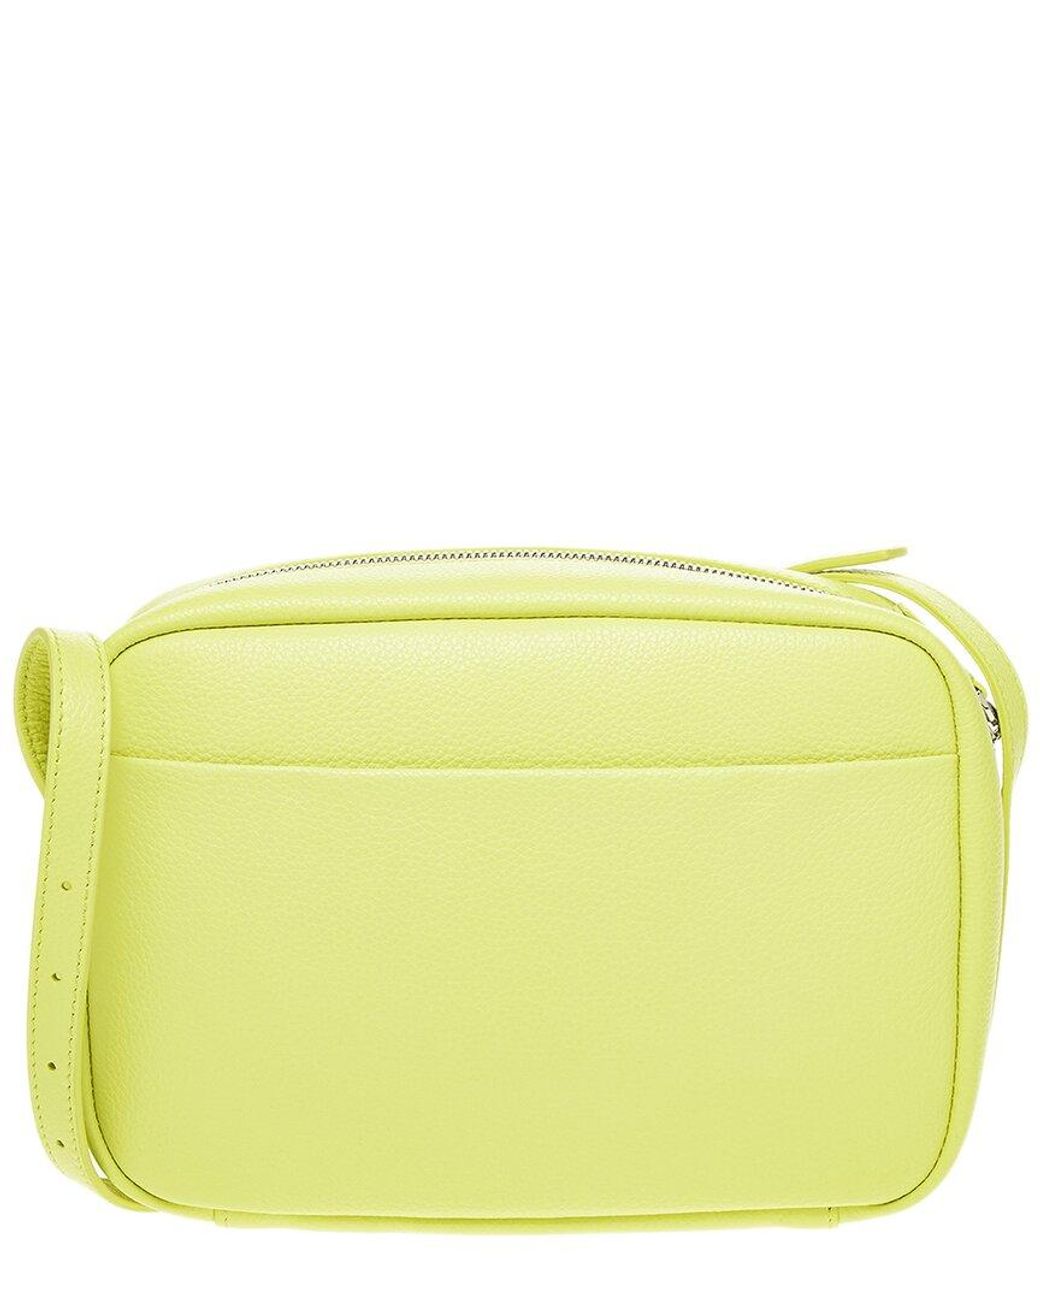 Balenciaga Everyday Camera Bag XS Neon Yellow